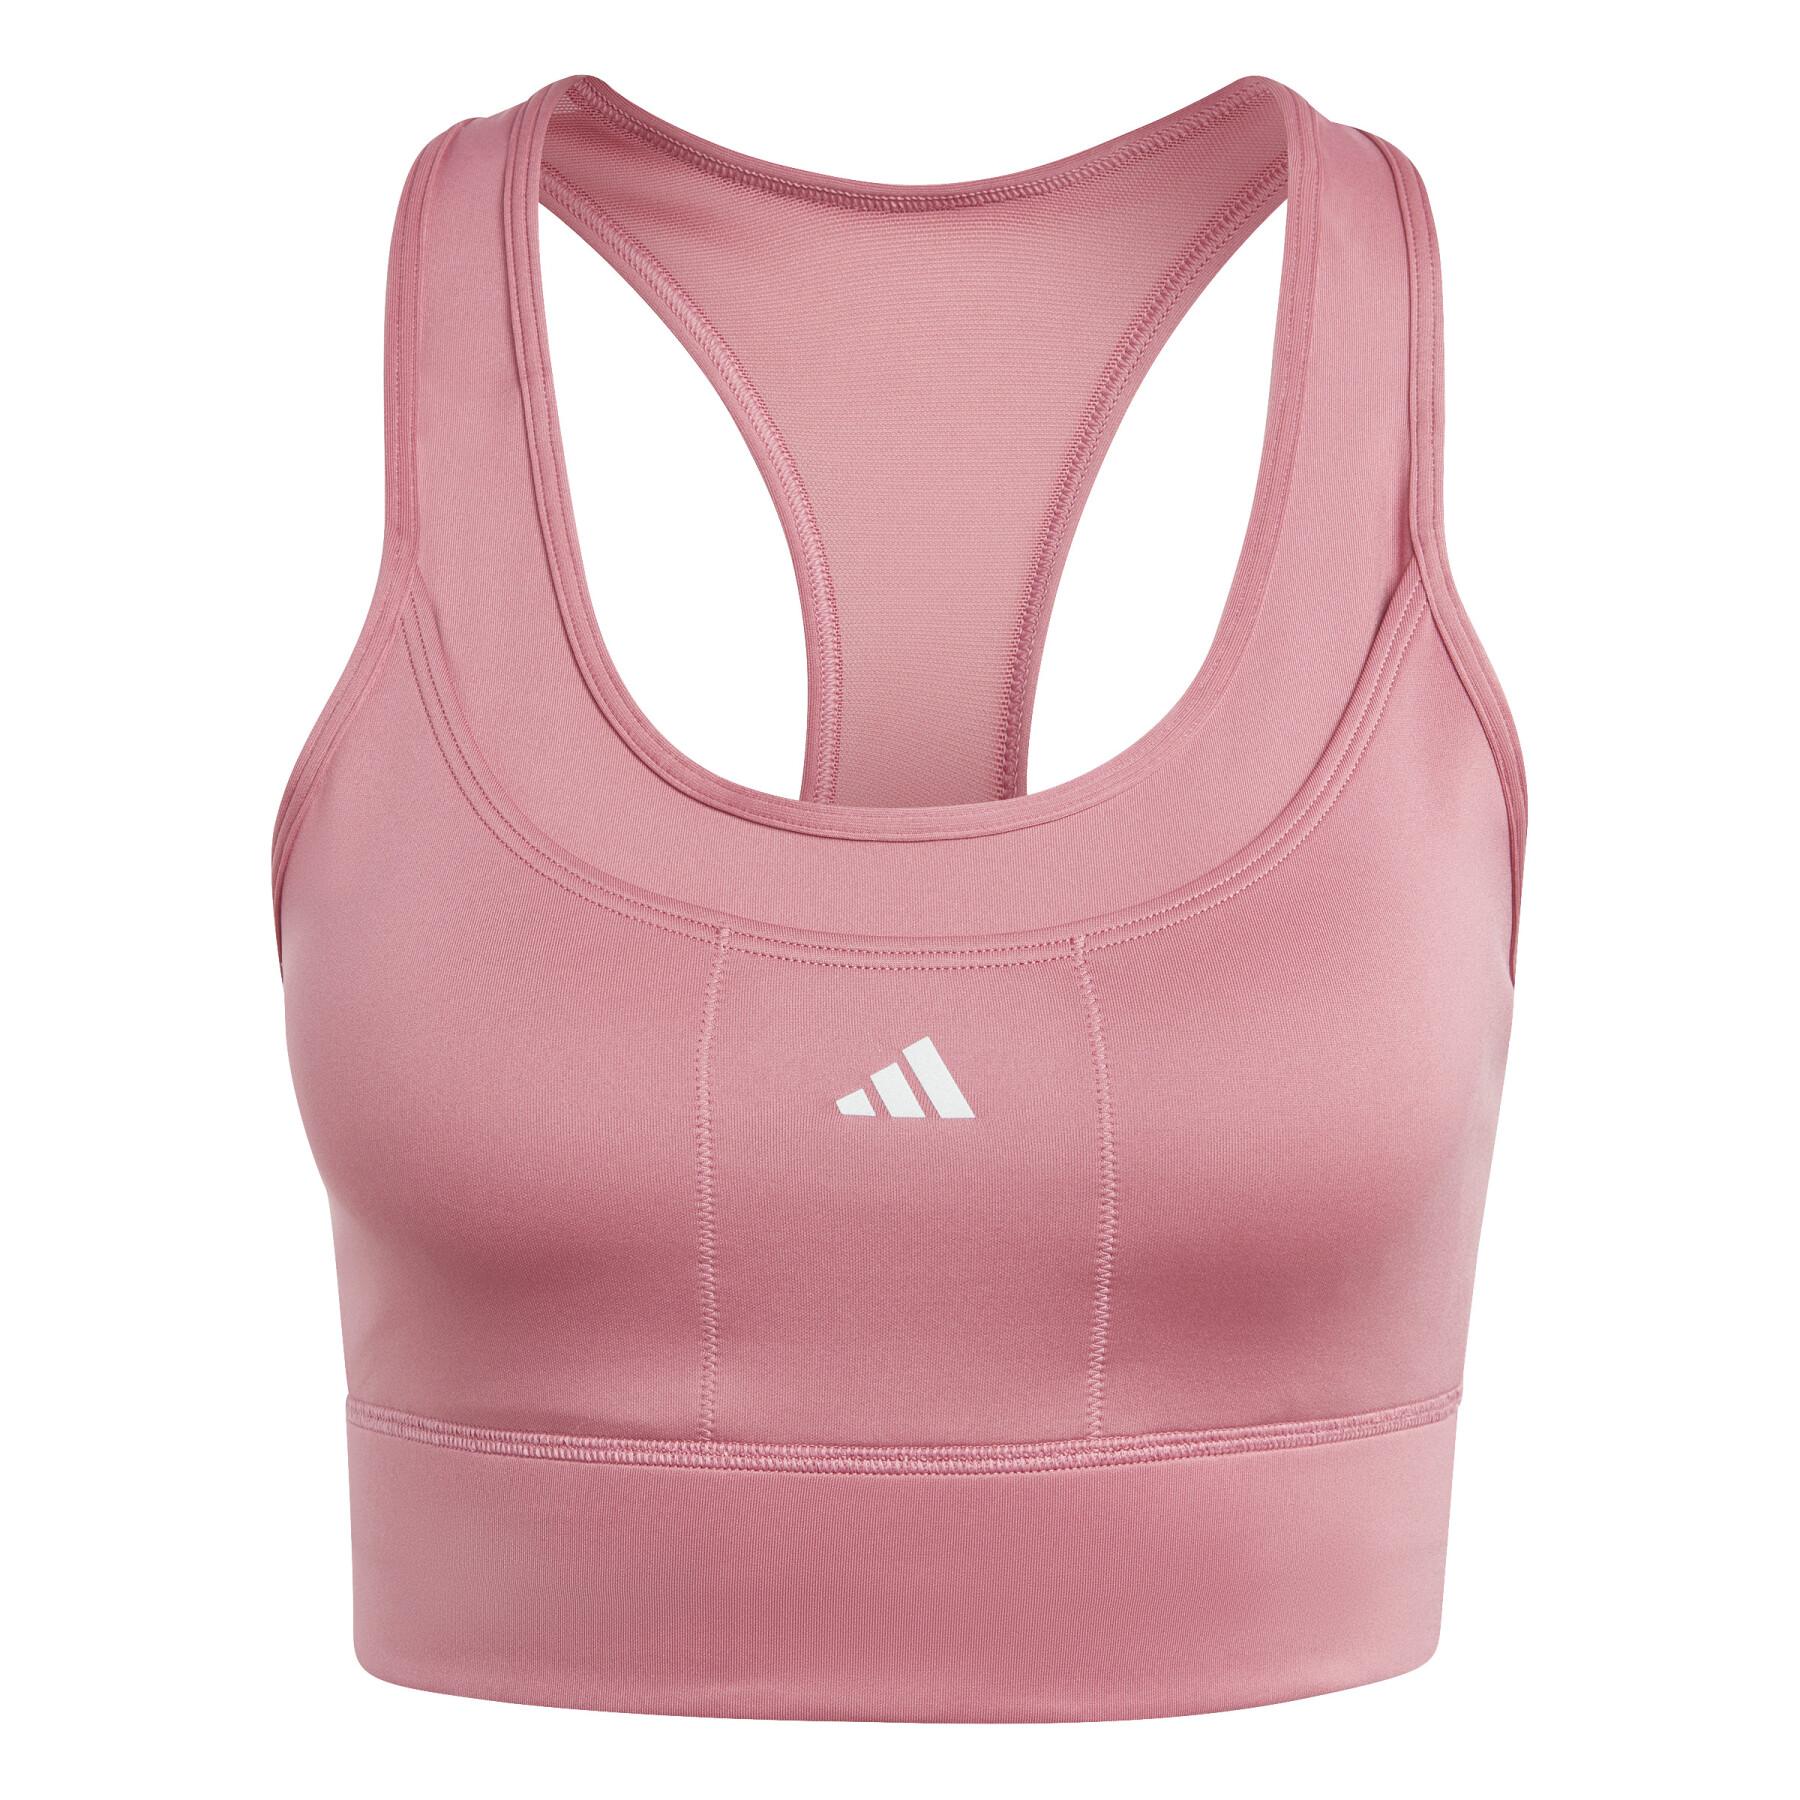 Medium support running bra for women adidas Pocket